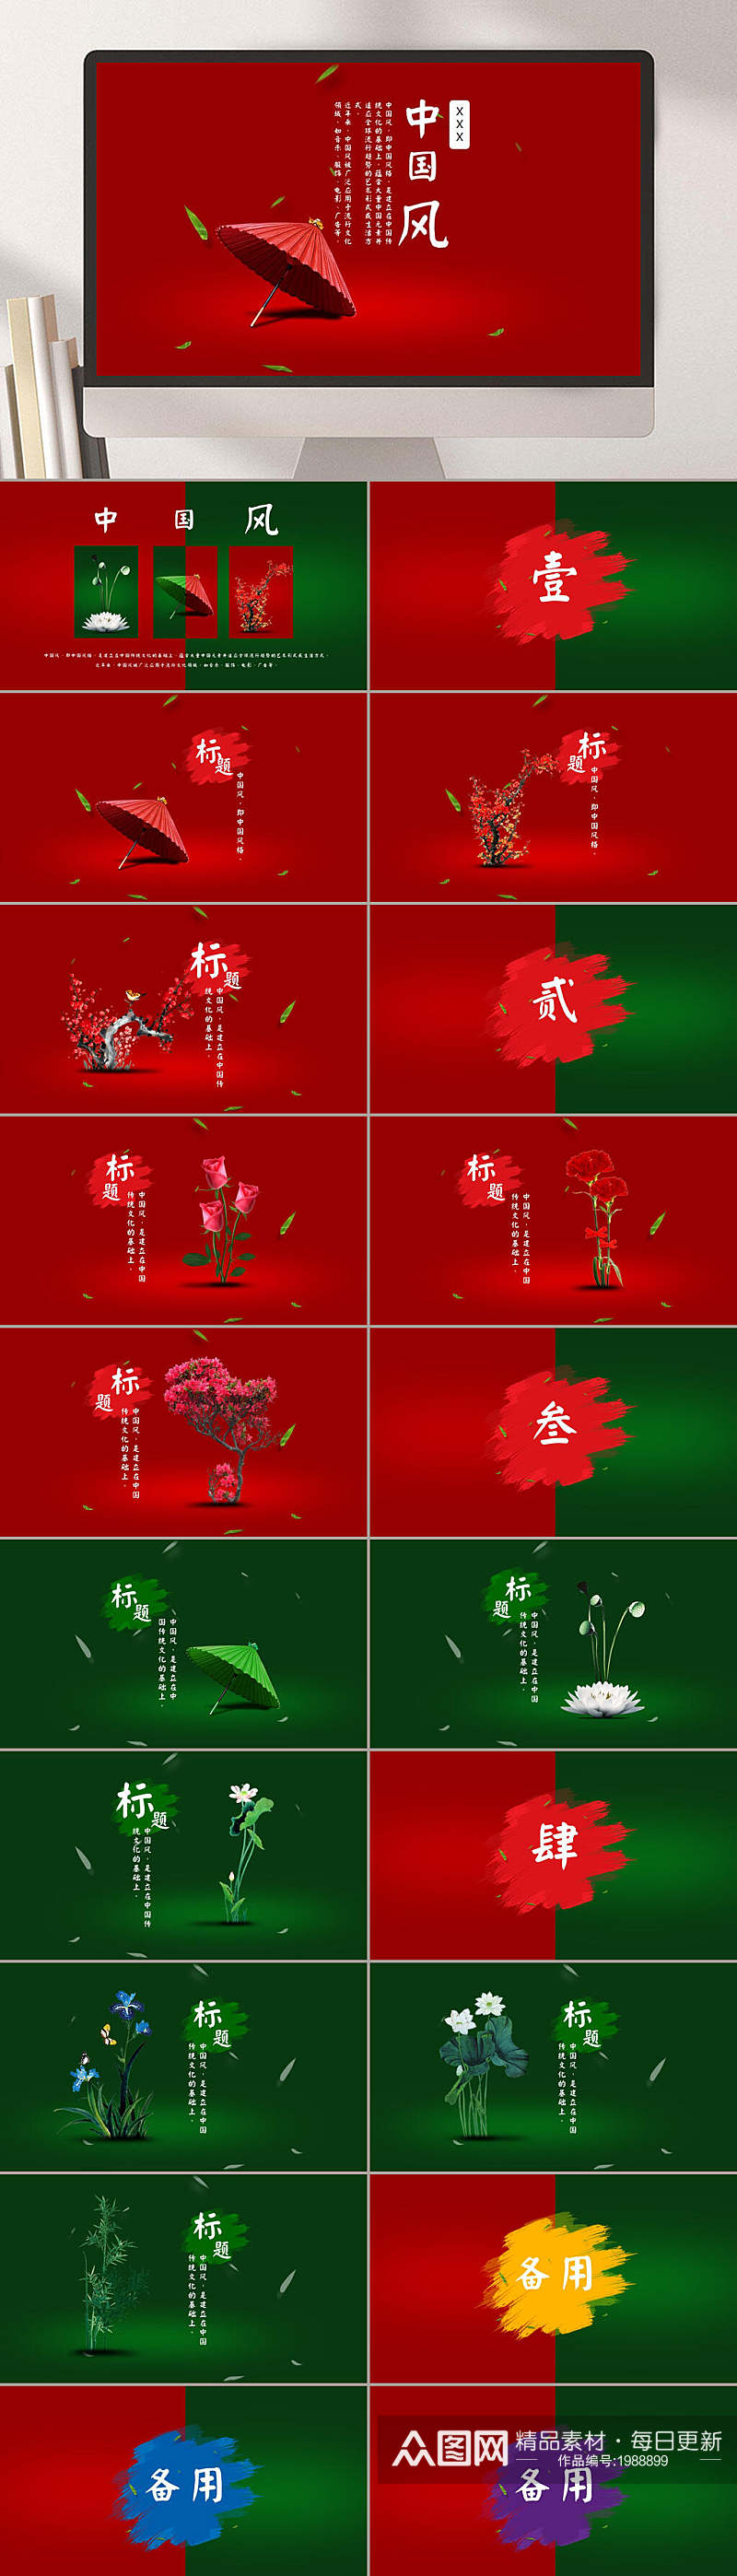 中国风红色伞背景企业展示通用PPT素材